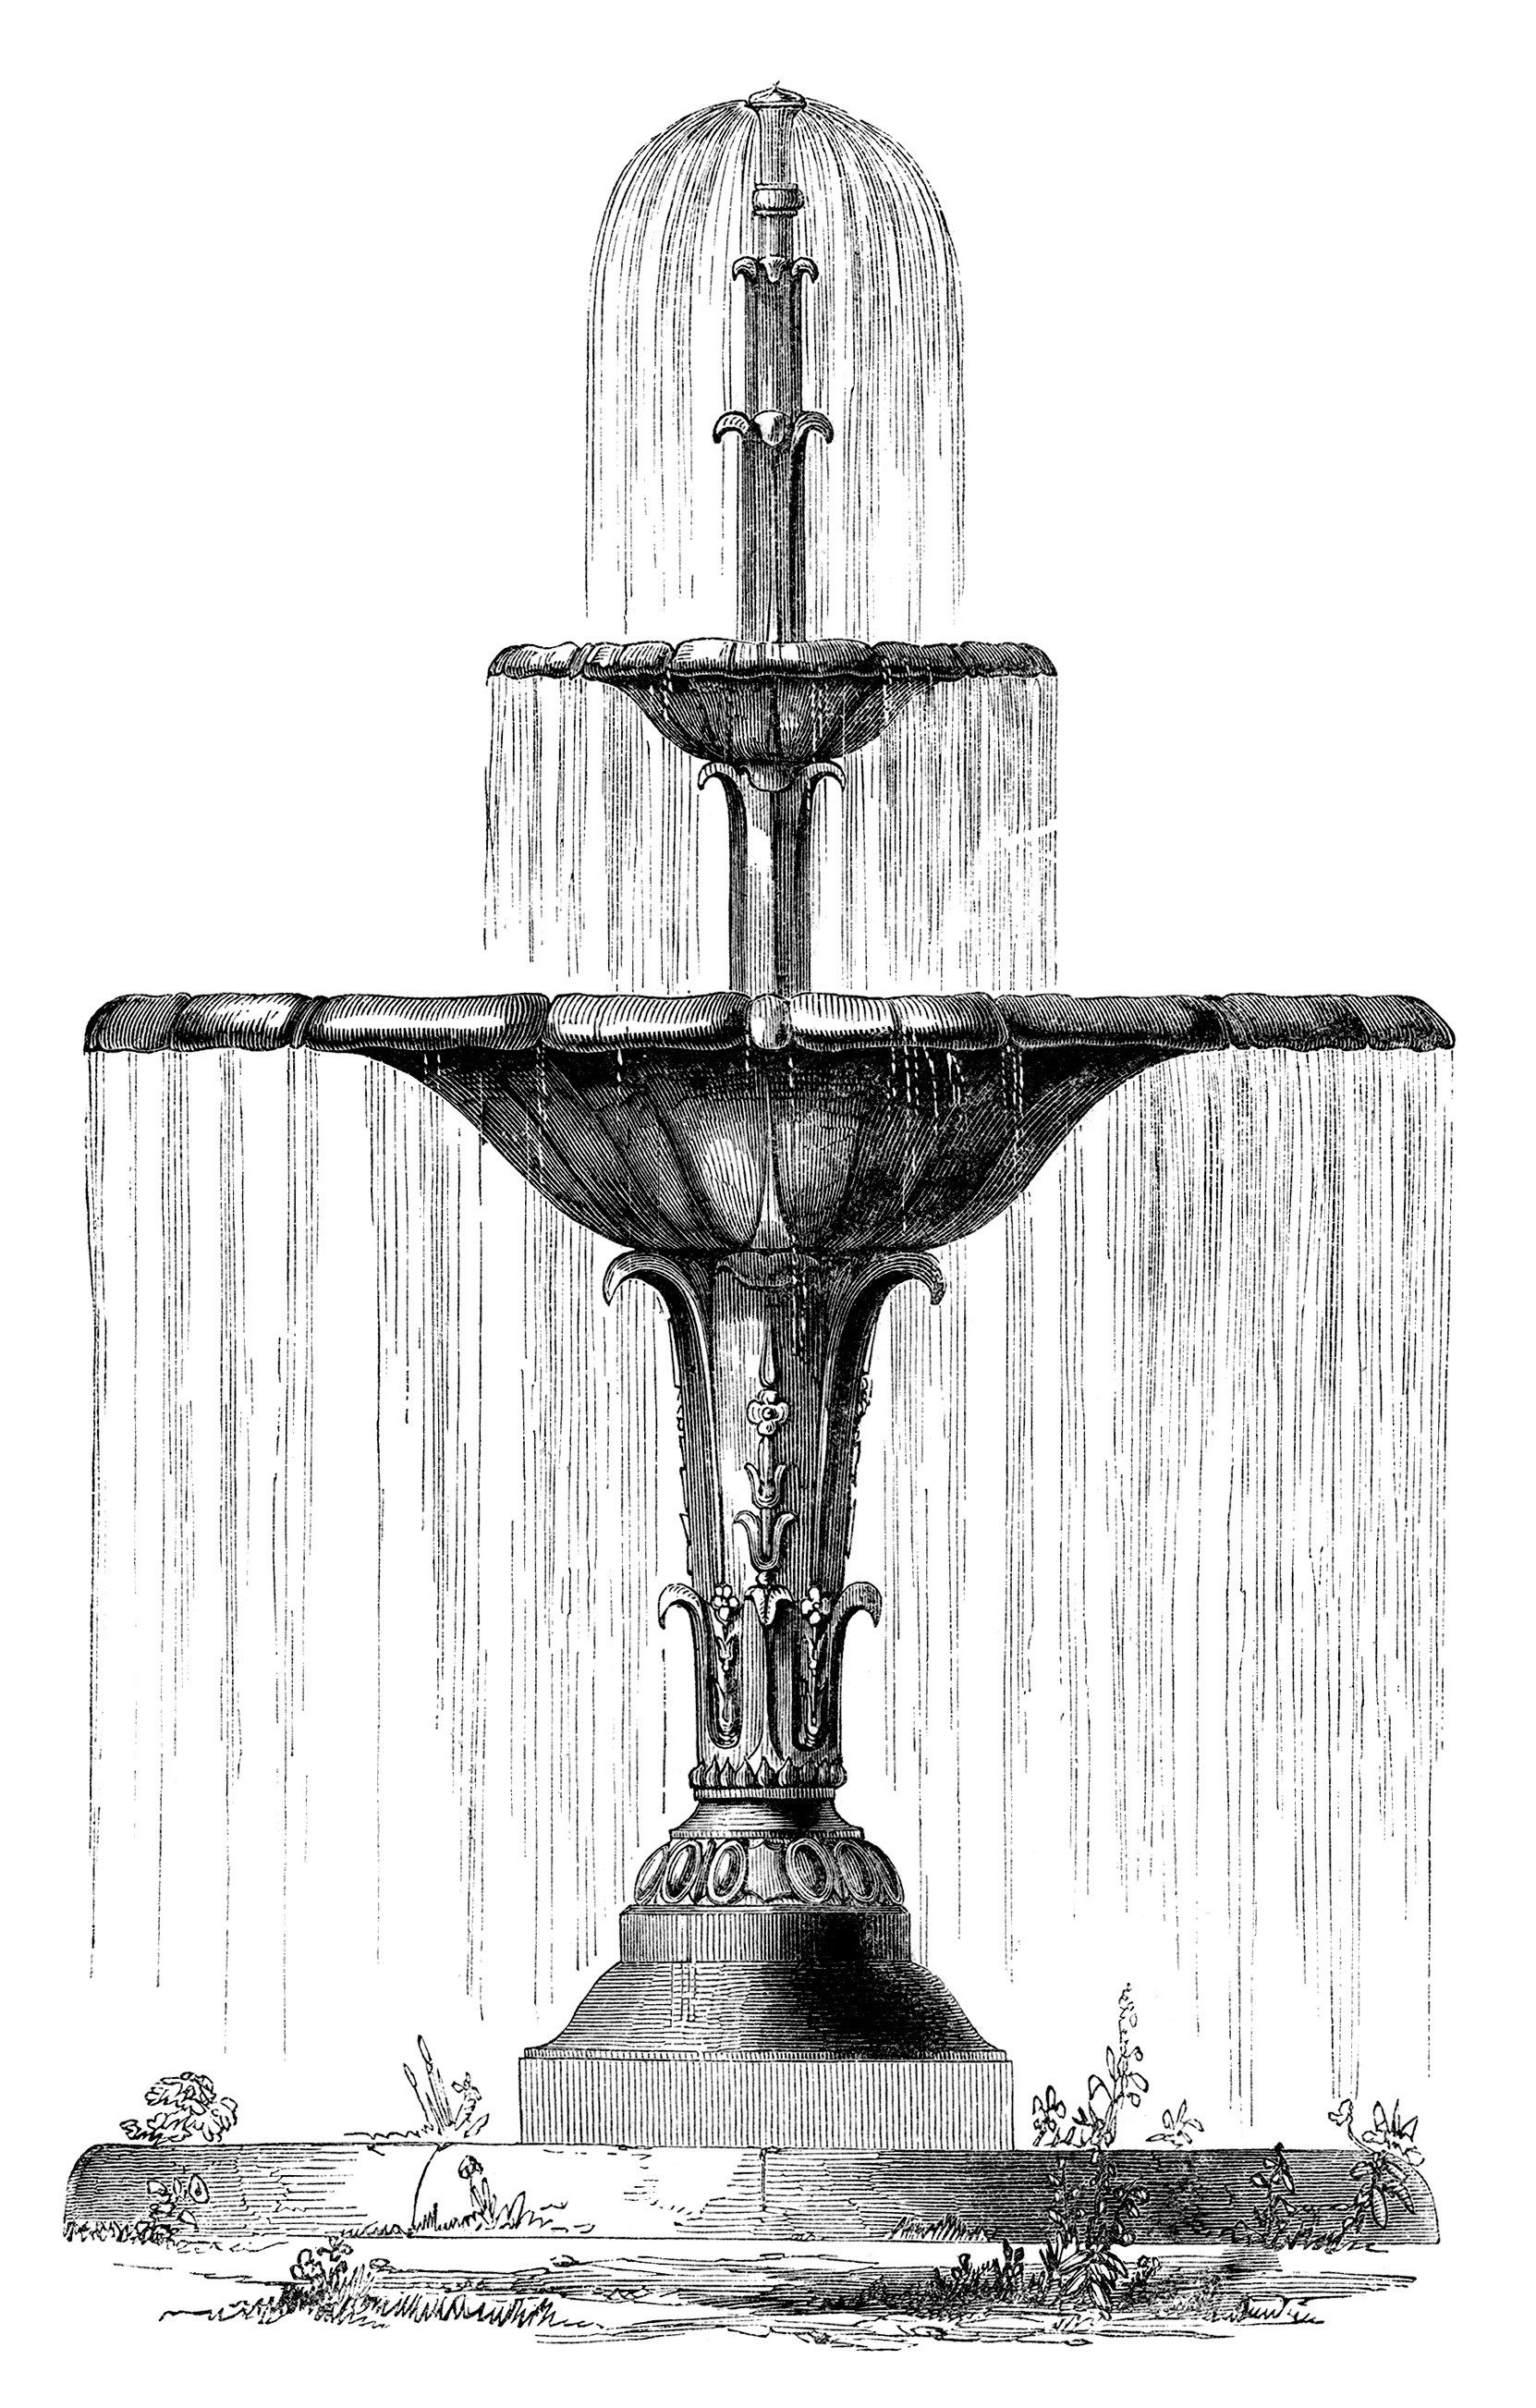 Water fountain, vintage engraving, garden clip art, black